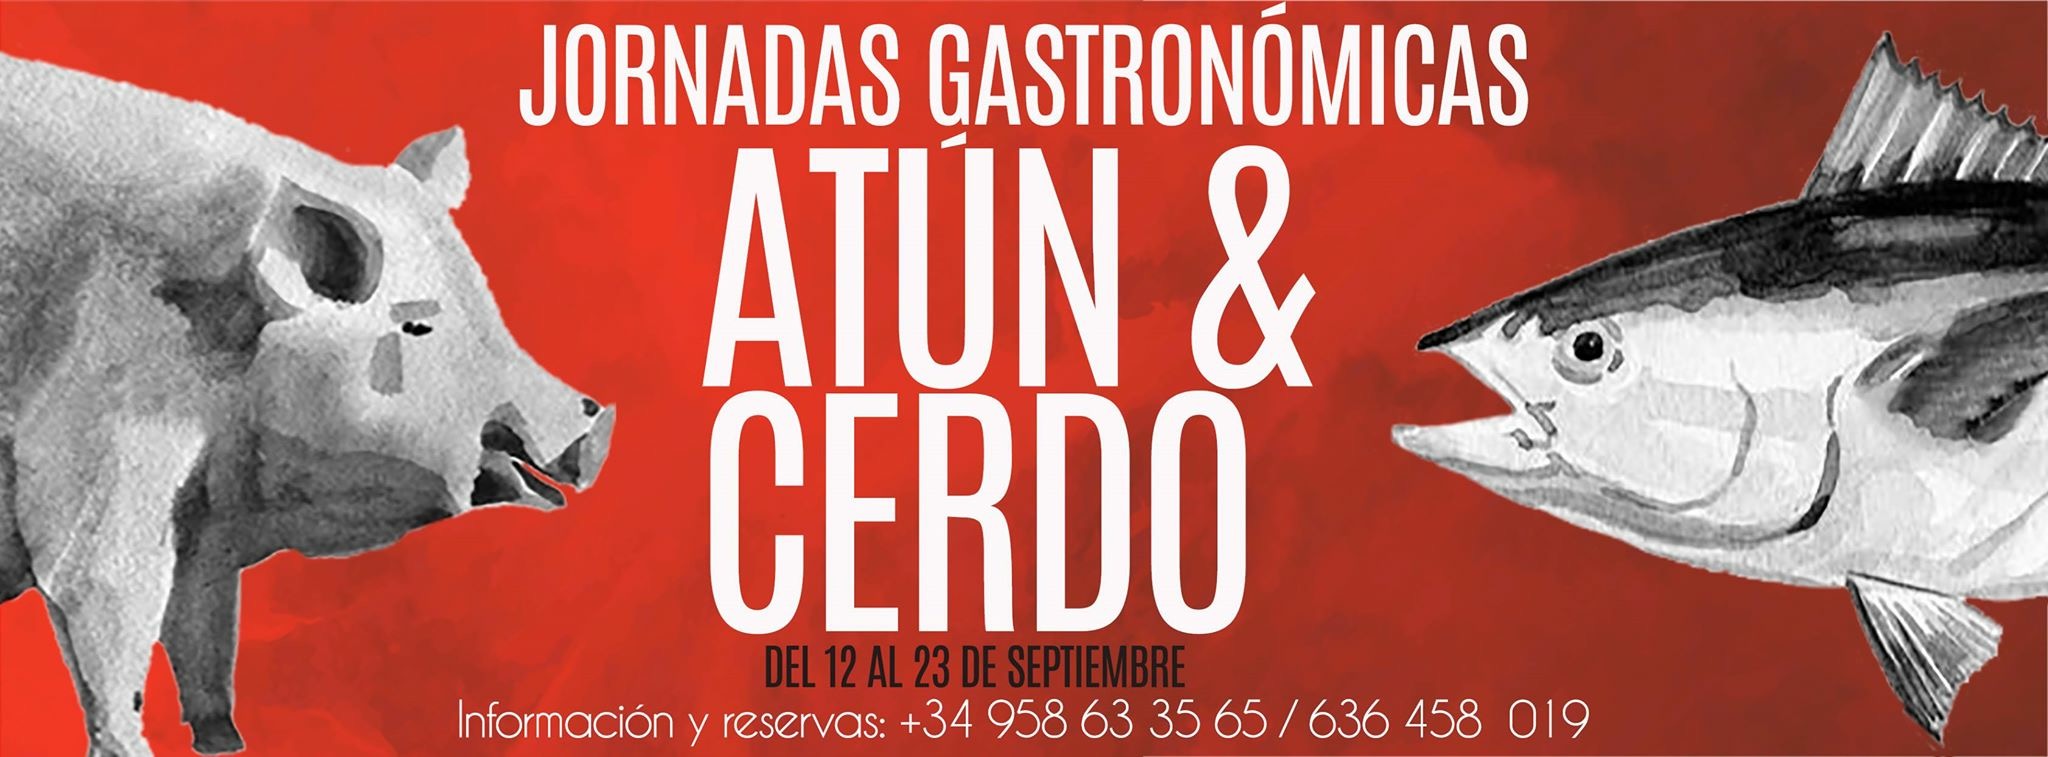 JORNADAS ATUN & CERDO